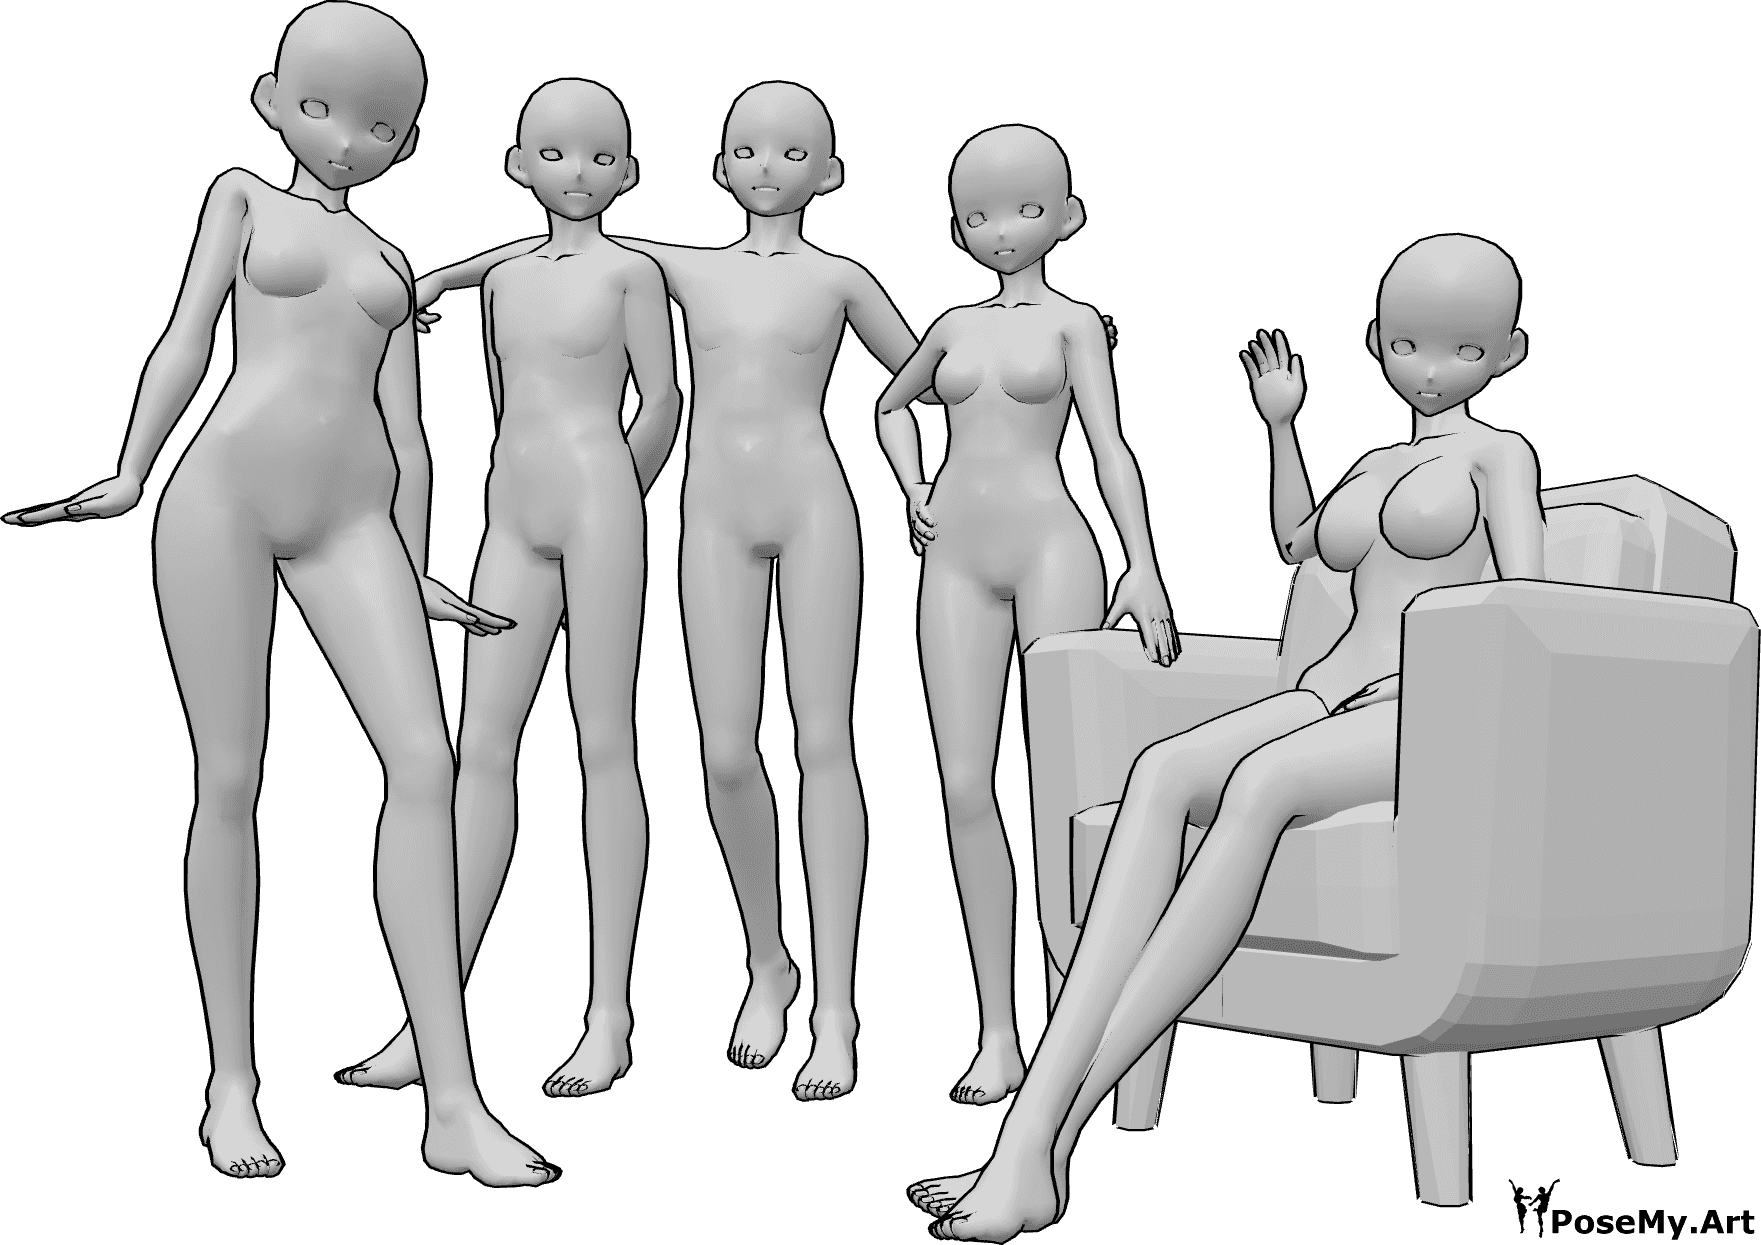 Referência de poses- Pose de grupo de anime - Grupo de cinco mulheres e homens de anime a posar para uma fotografia de grupo, sentados e de pé